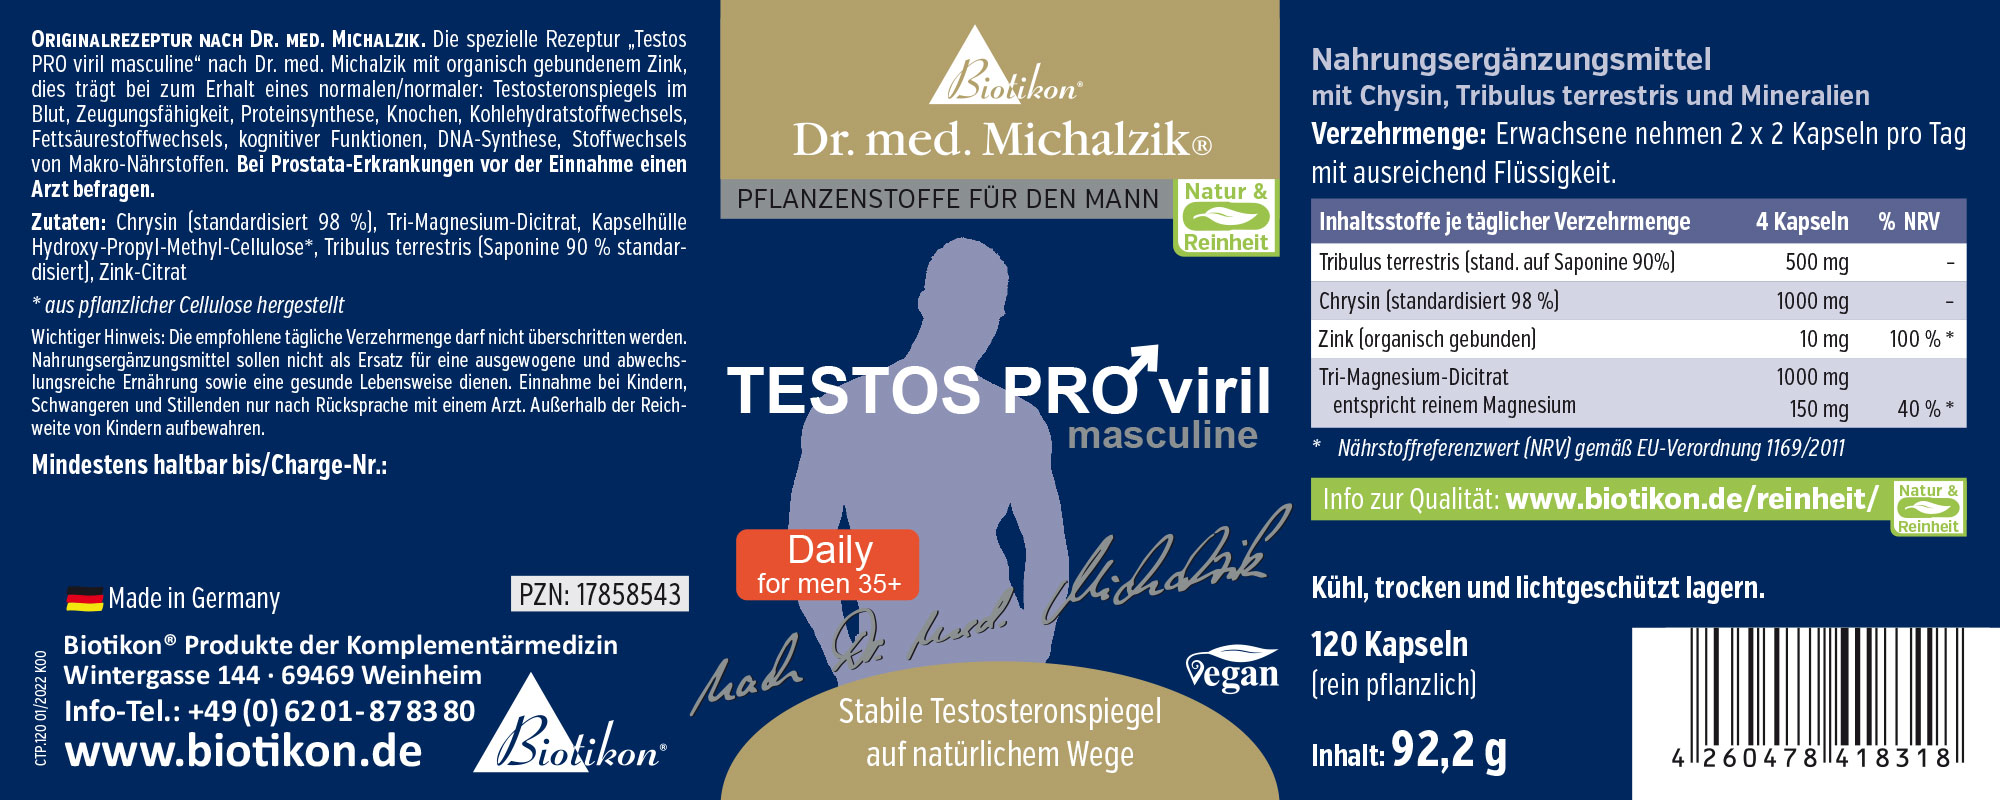 Testos PRO viril masculine by Dr. med. Michalzik